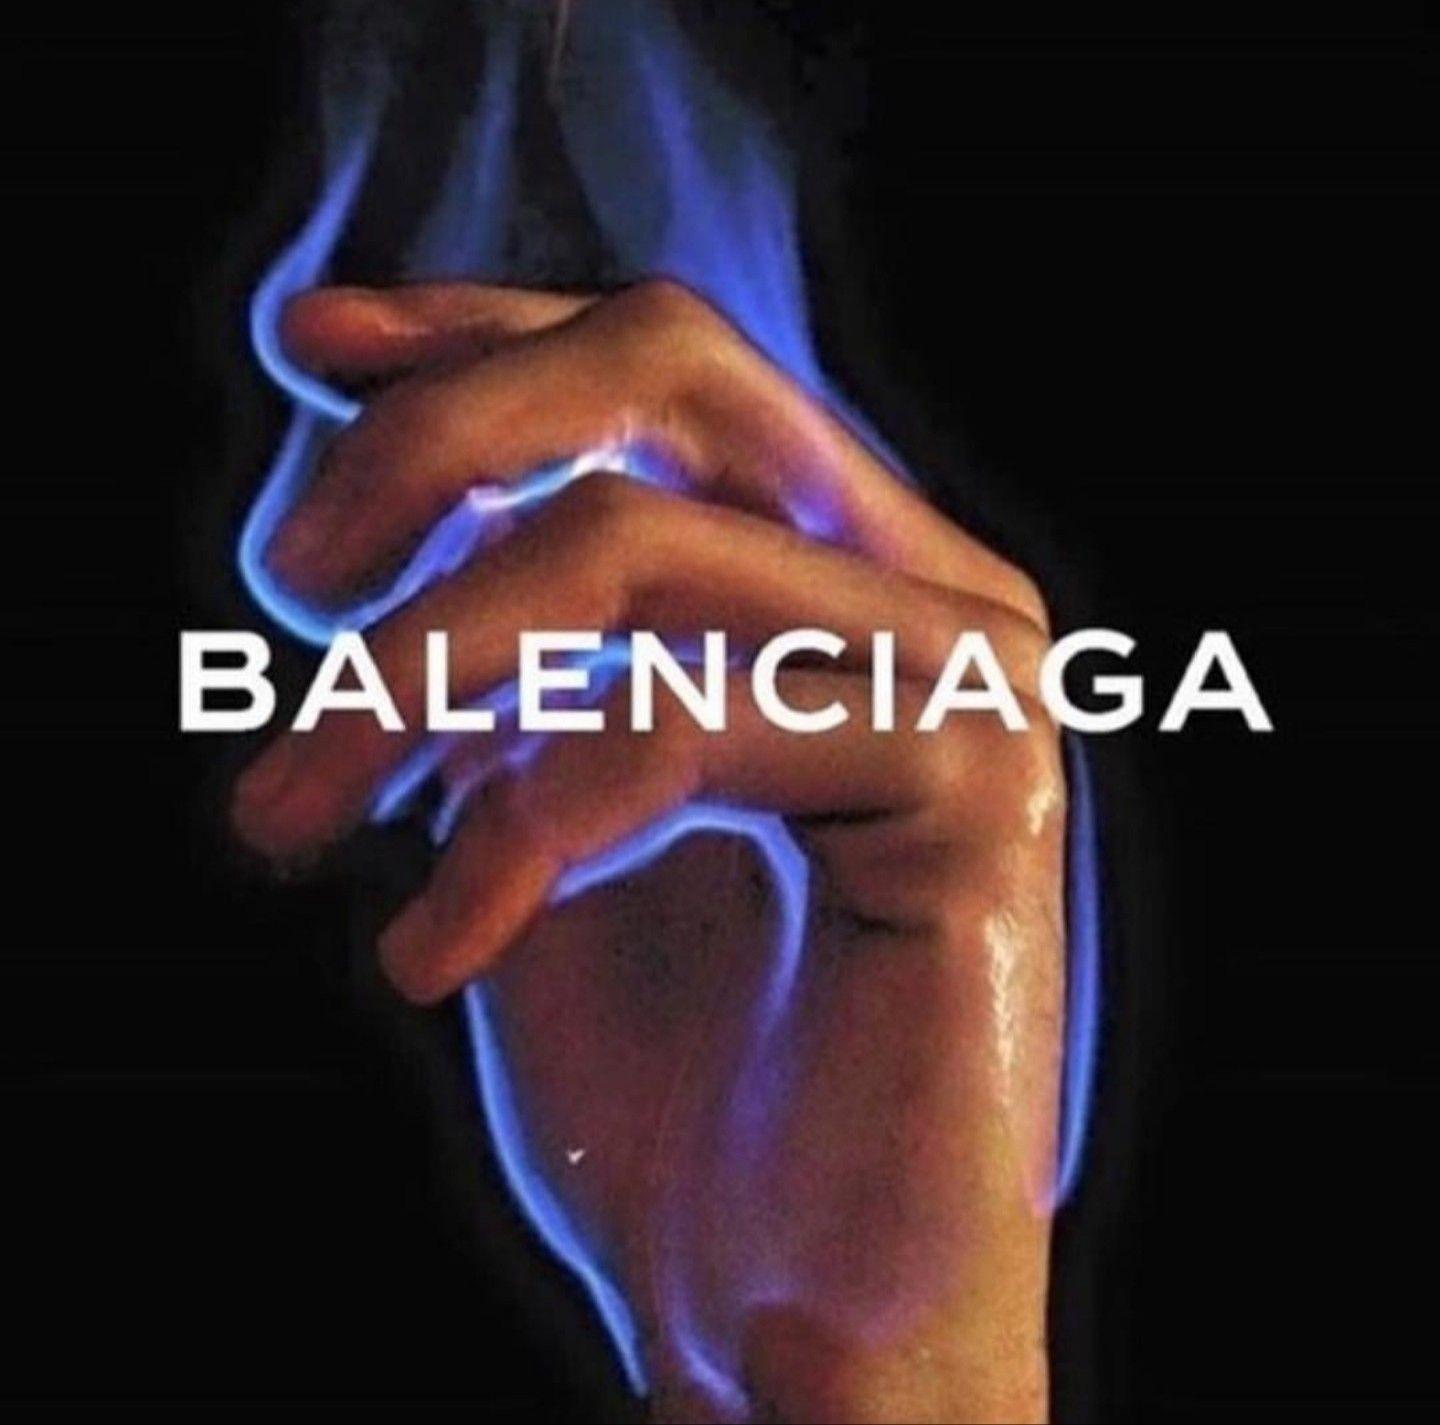 1440x1425 bàn tay # lửa #balenciaga # màu xanh lam # thẩm mỹ # giấy dán tường